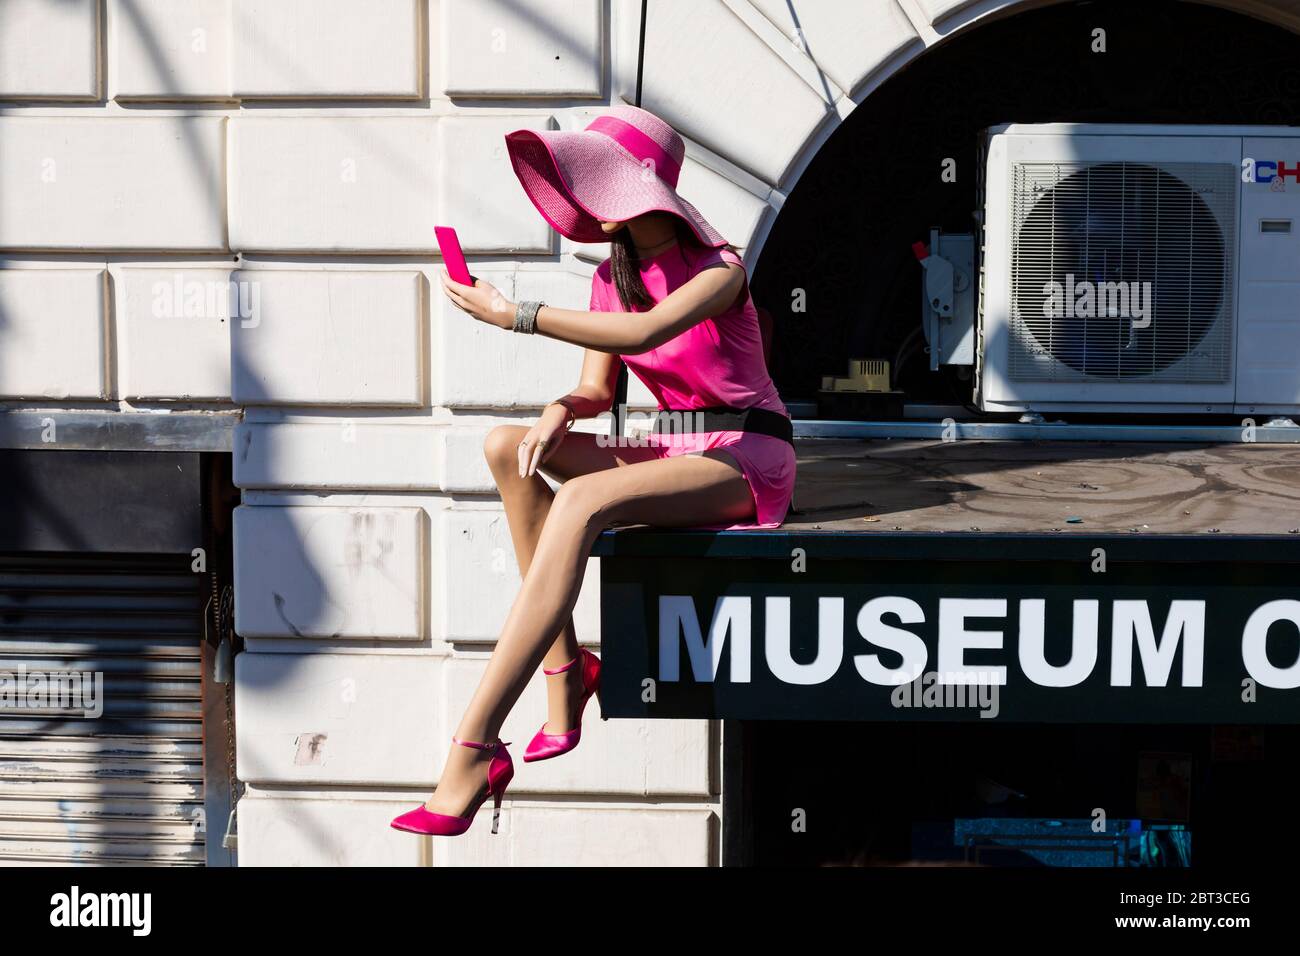 Manichino femminile sopra la porta del Museo dei selfie di Hollywood, Los Angeles, California, Stati Uniti d'America Foto Stock